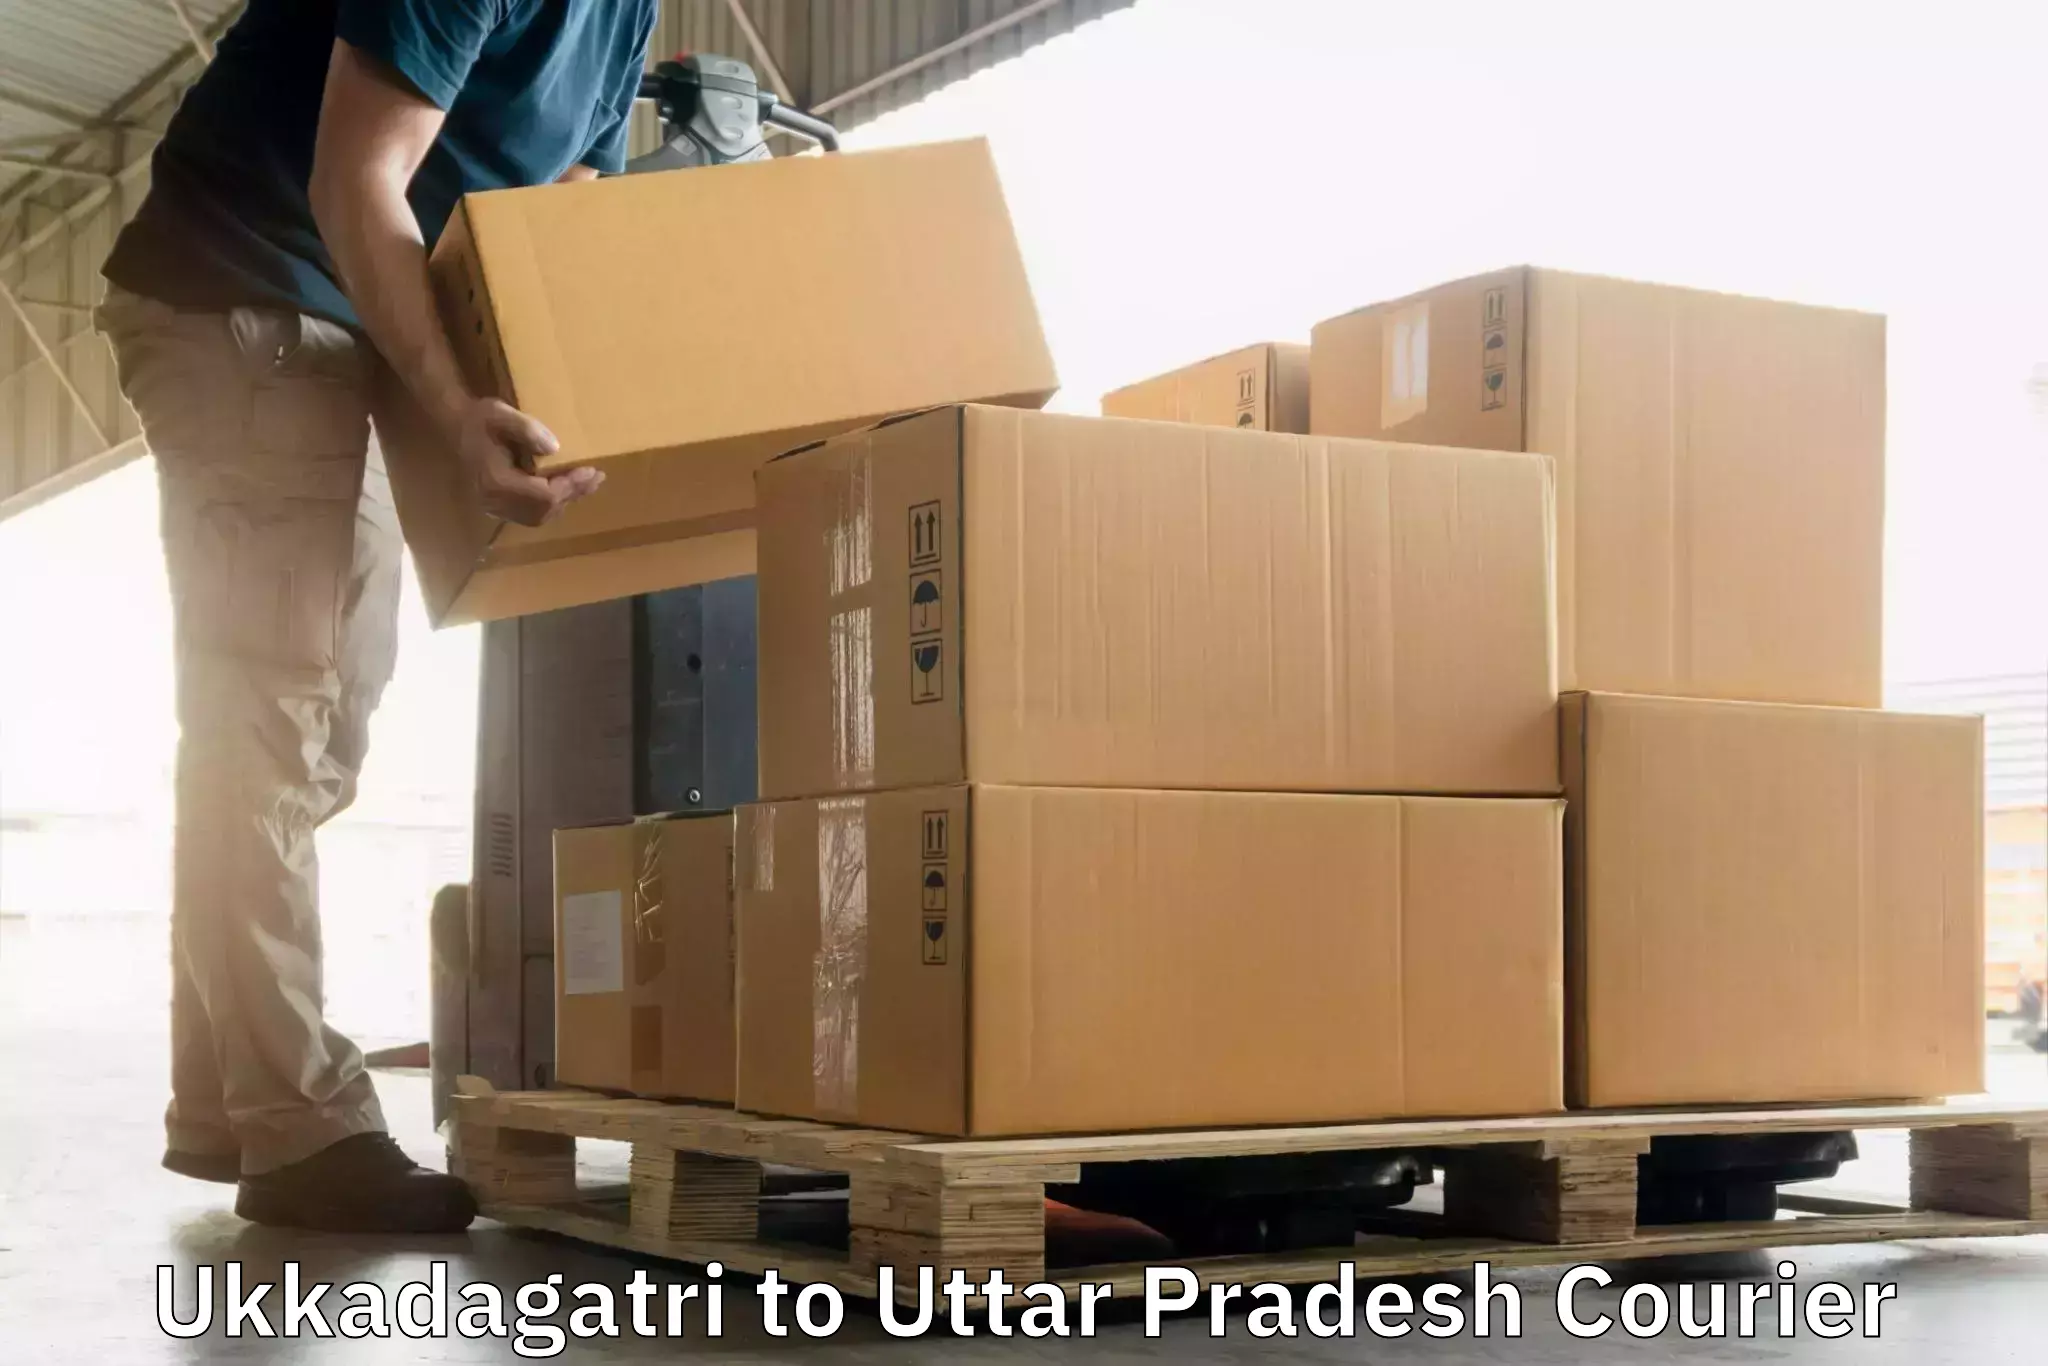 Online package tracking Ukkadagatri to Shohratgarh